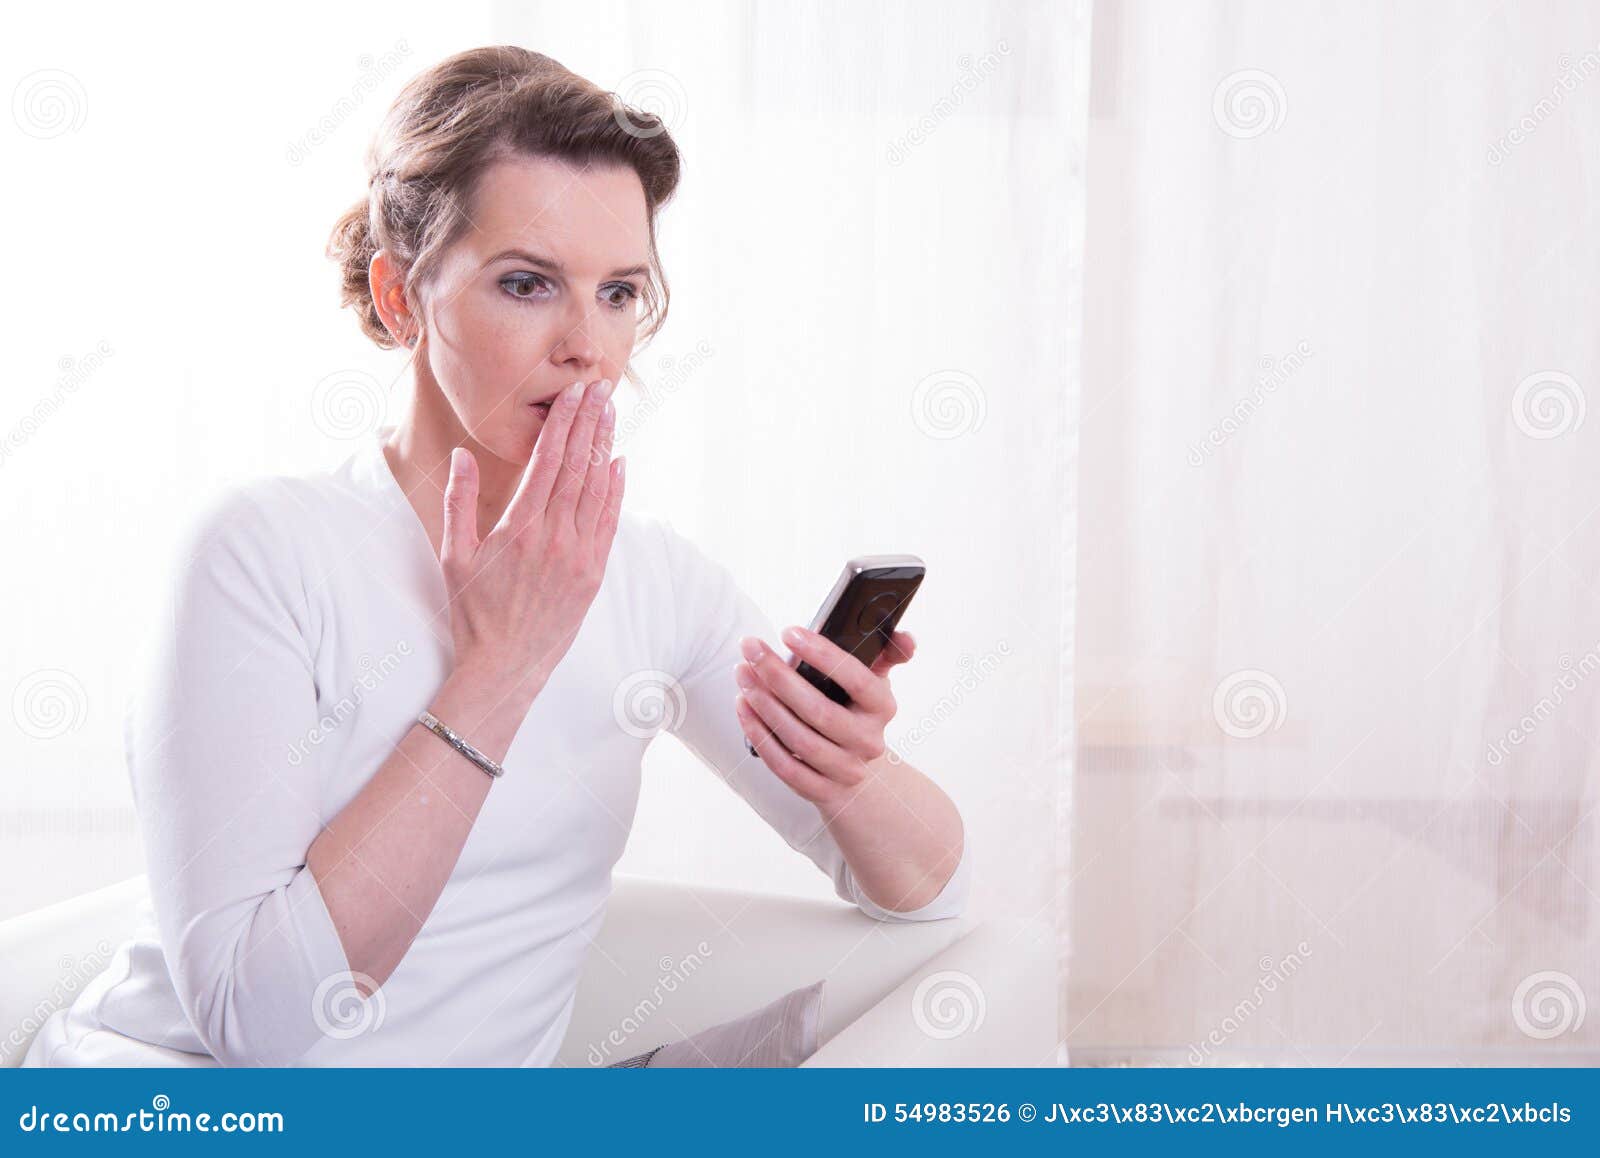 Starke Frau frightended durch Mitteilung auf Smartphone